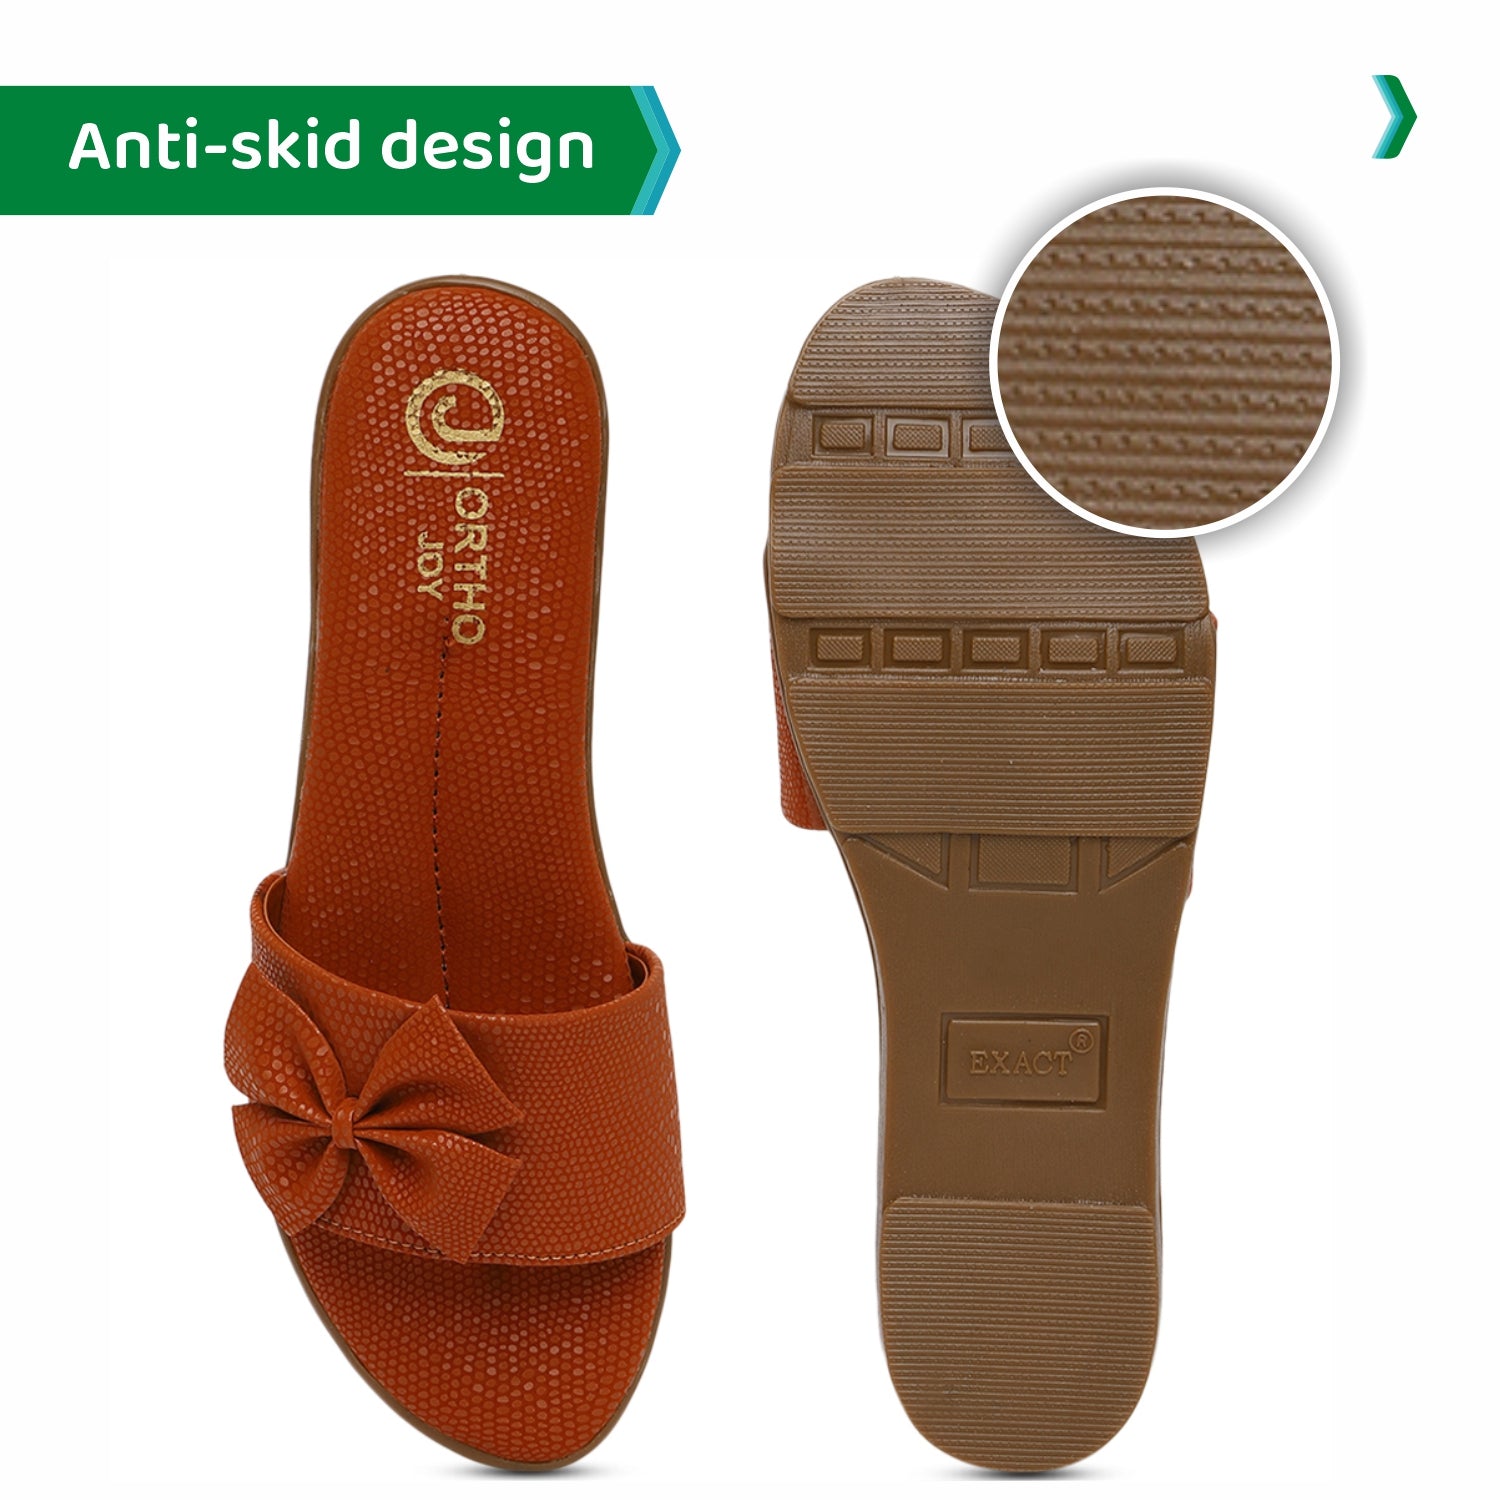 ORTHO JOY doctor slippers | Soft Fancy Footwear